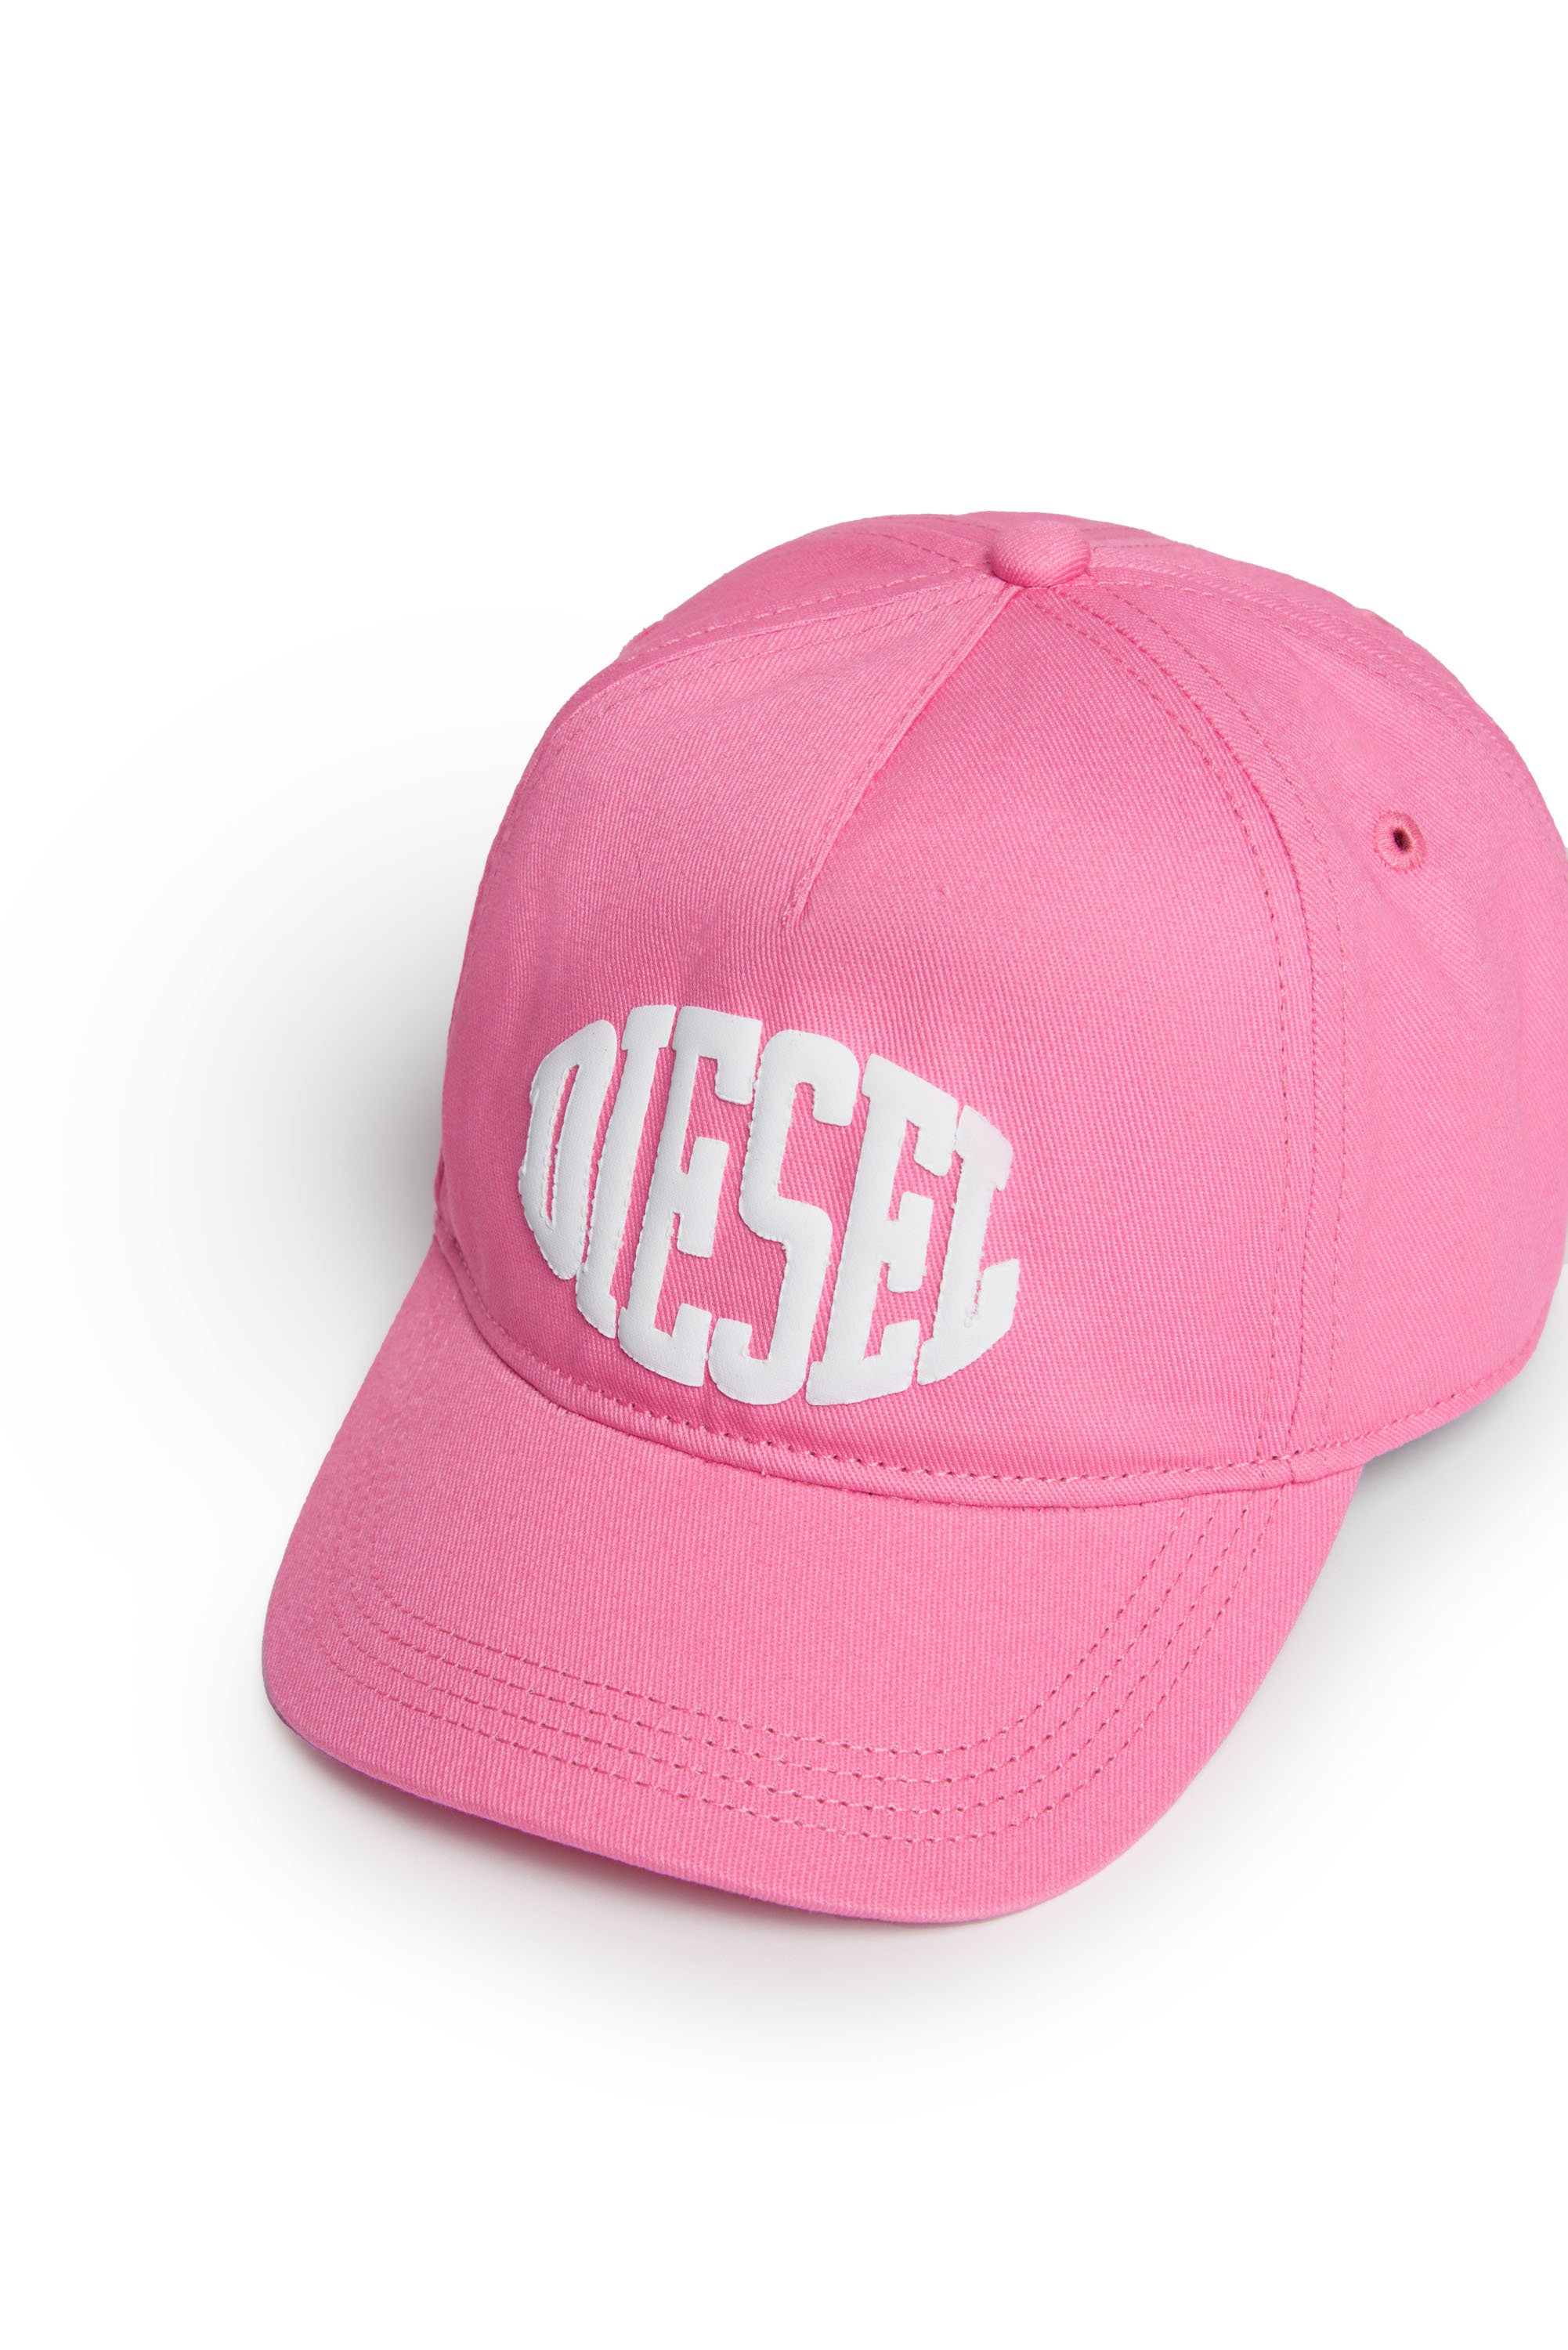 Diesel - FBOL, Pink - Image 3